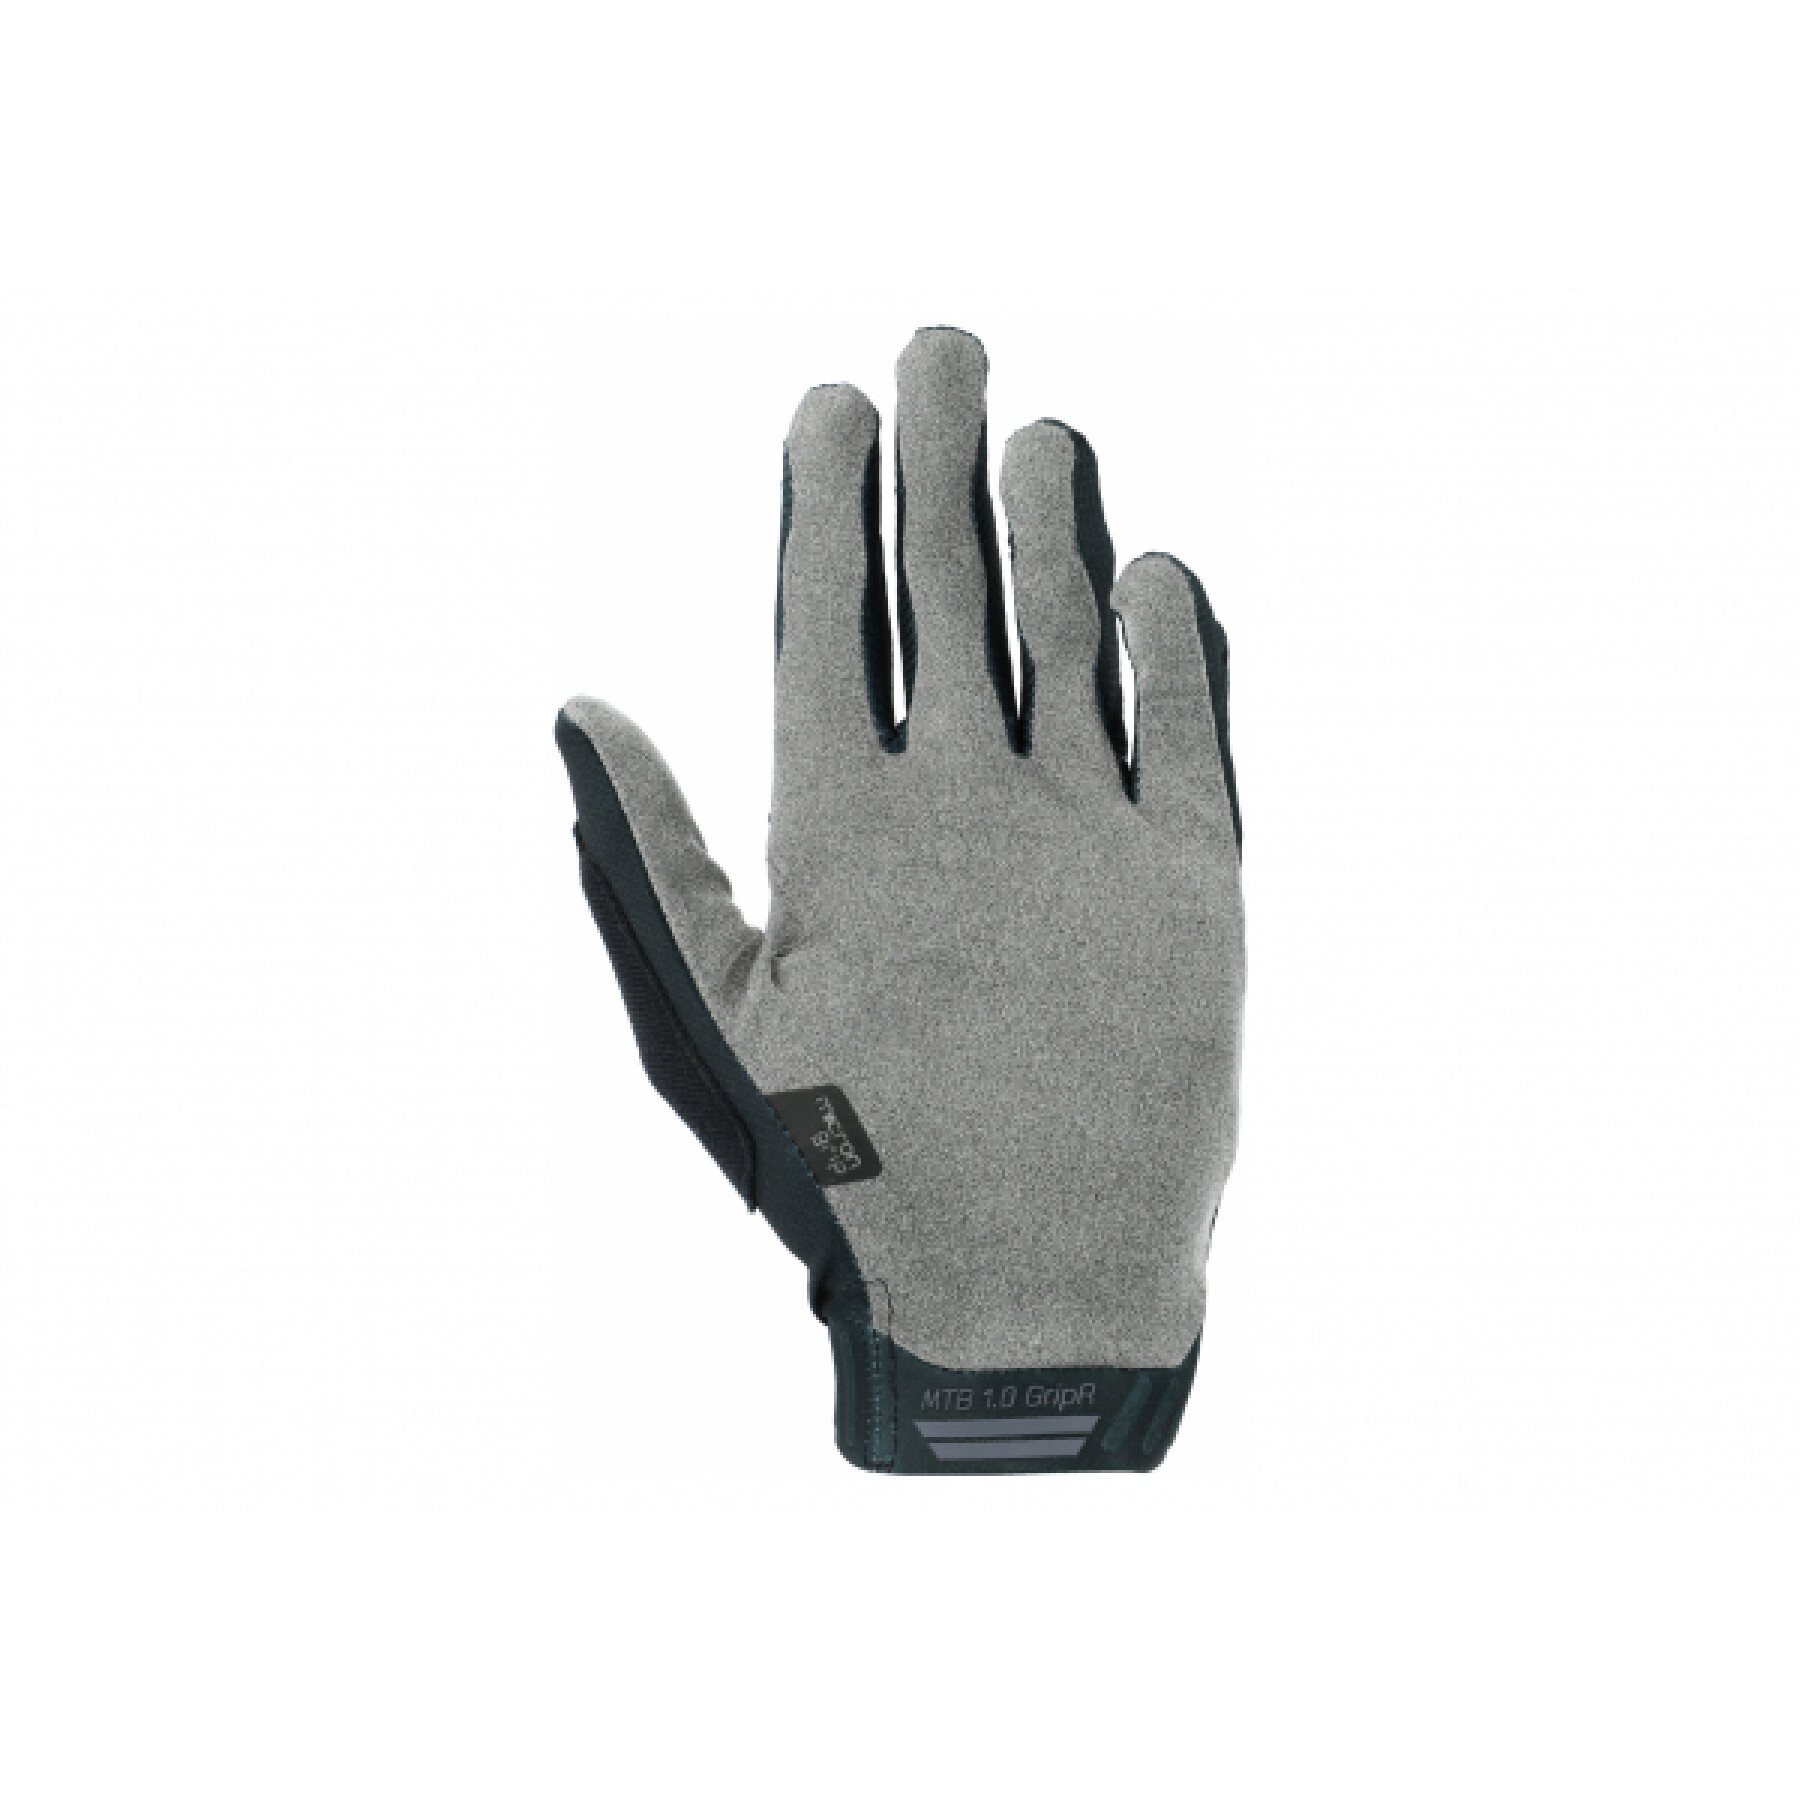 Gloves Leatt mtb 1.0 gripr